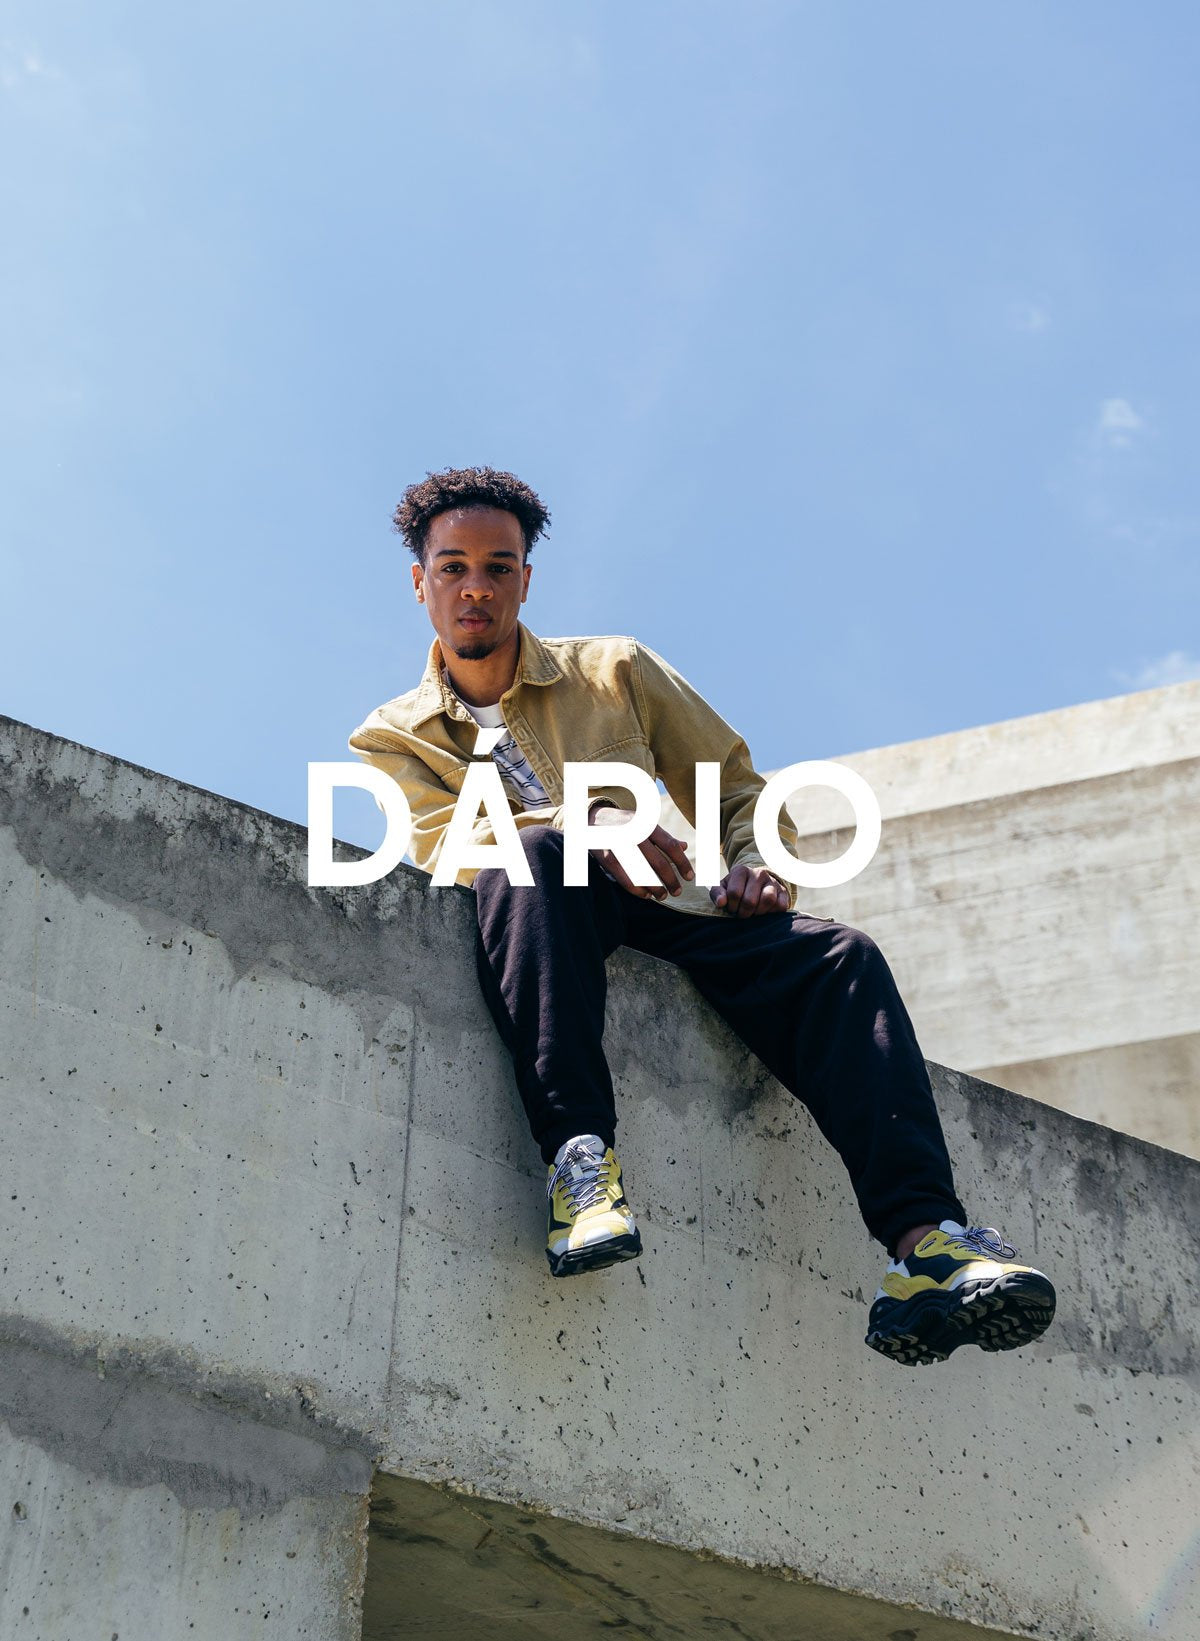 Dário assis sur un mur en portant Diverge sneakers, en mettant en avant l’impact social et les chaussures personnalisées à travers le projet Imagine.